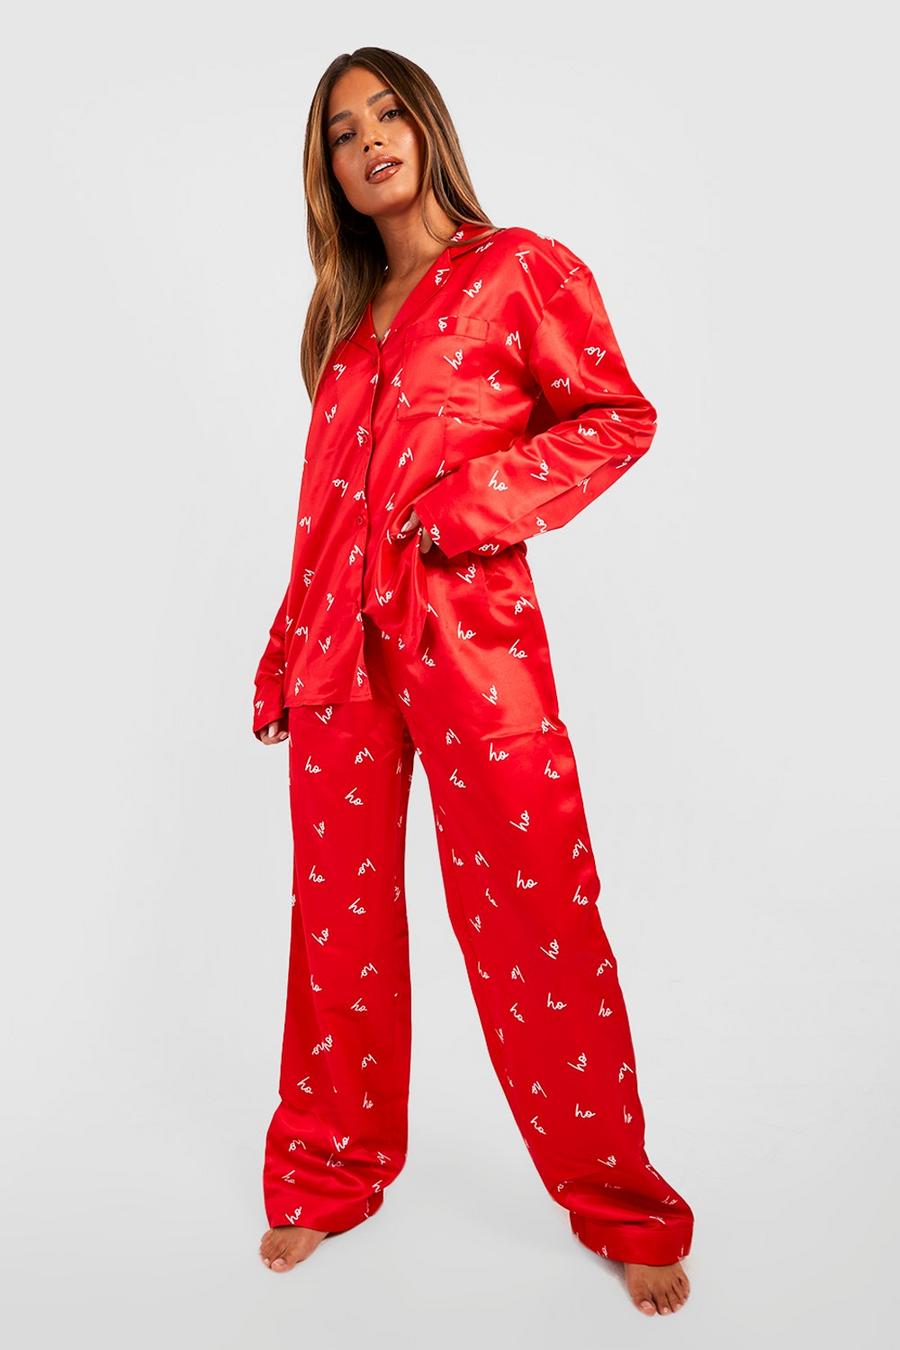 Christmas Pyjamas, Christmas PJs